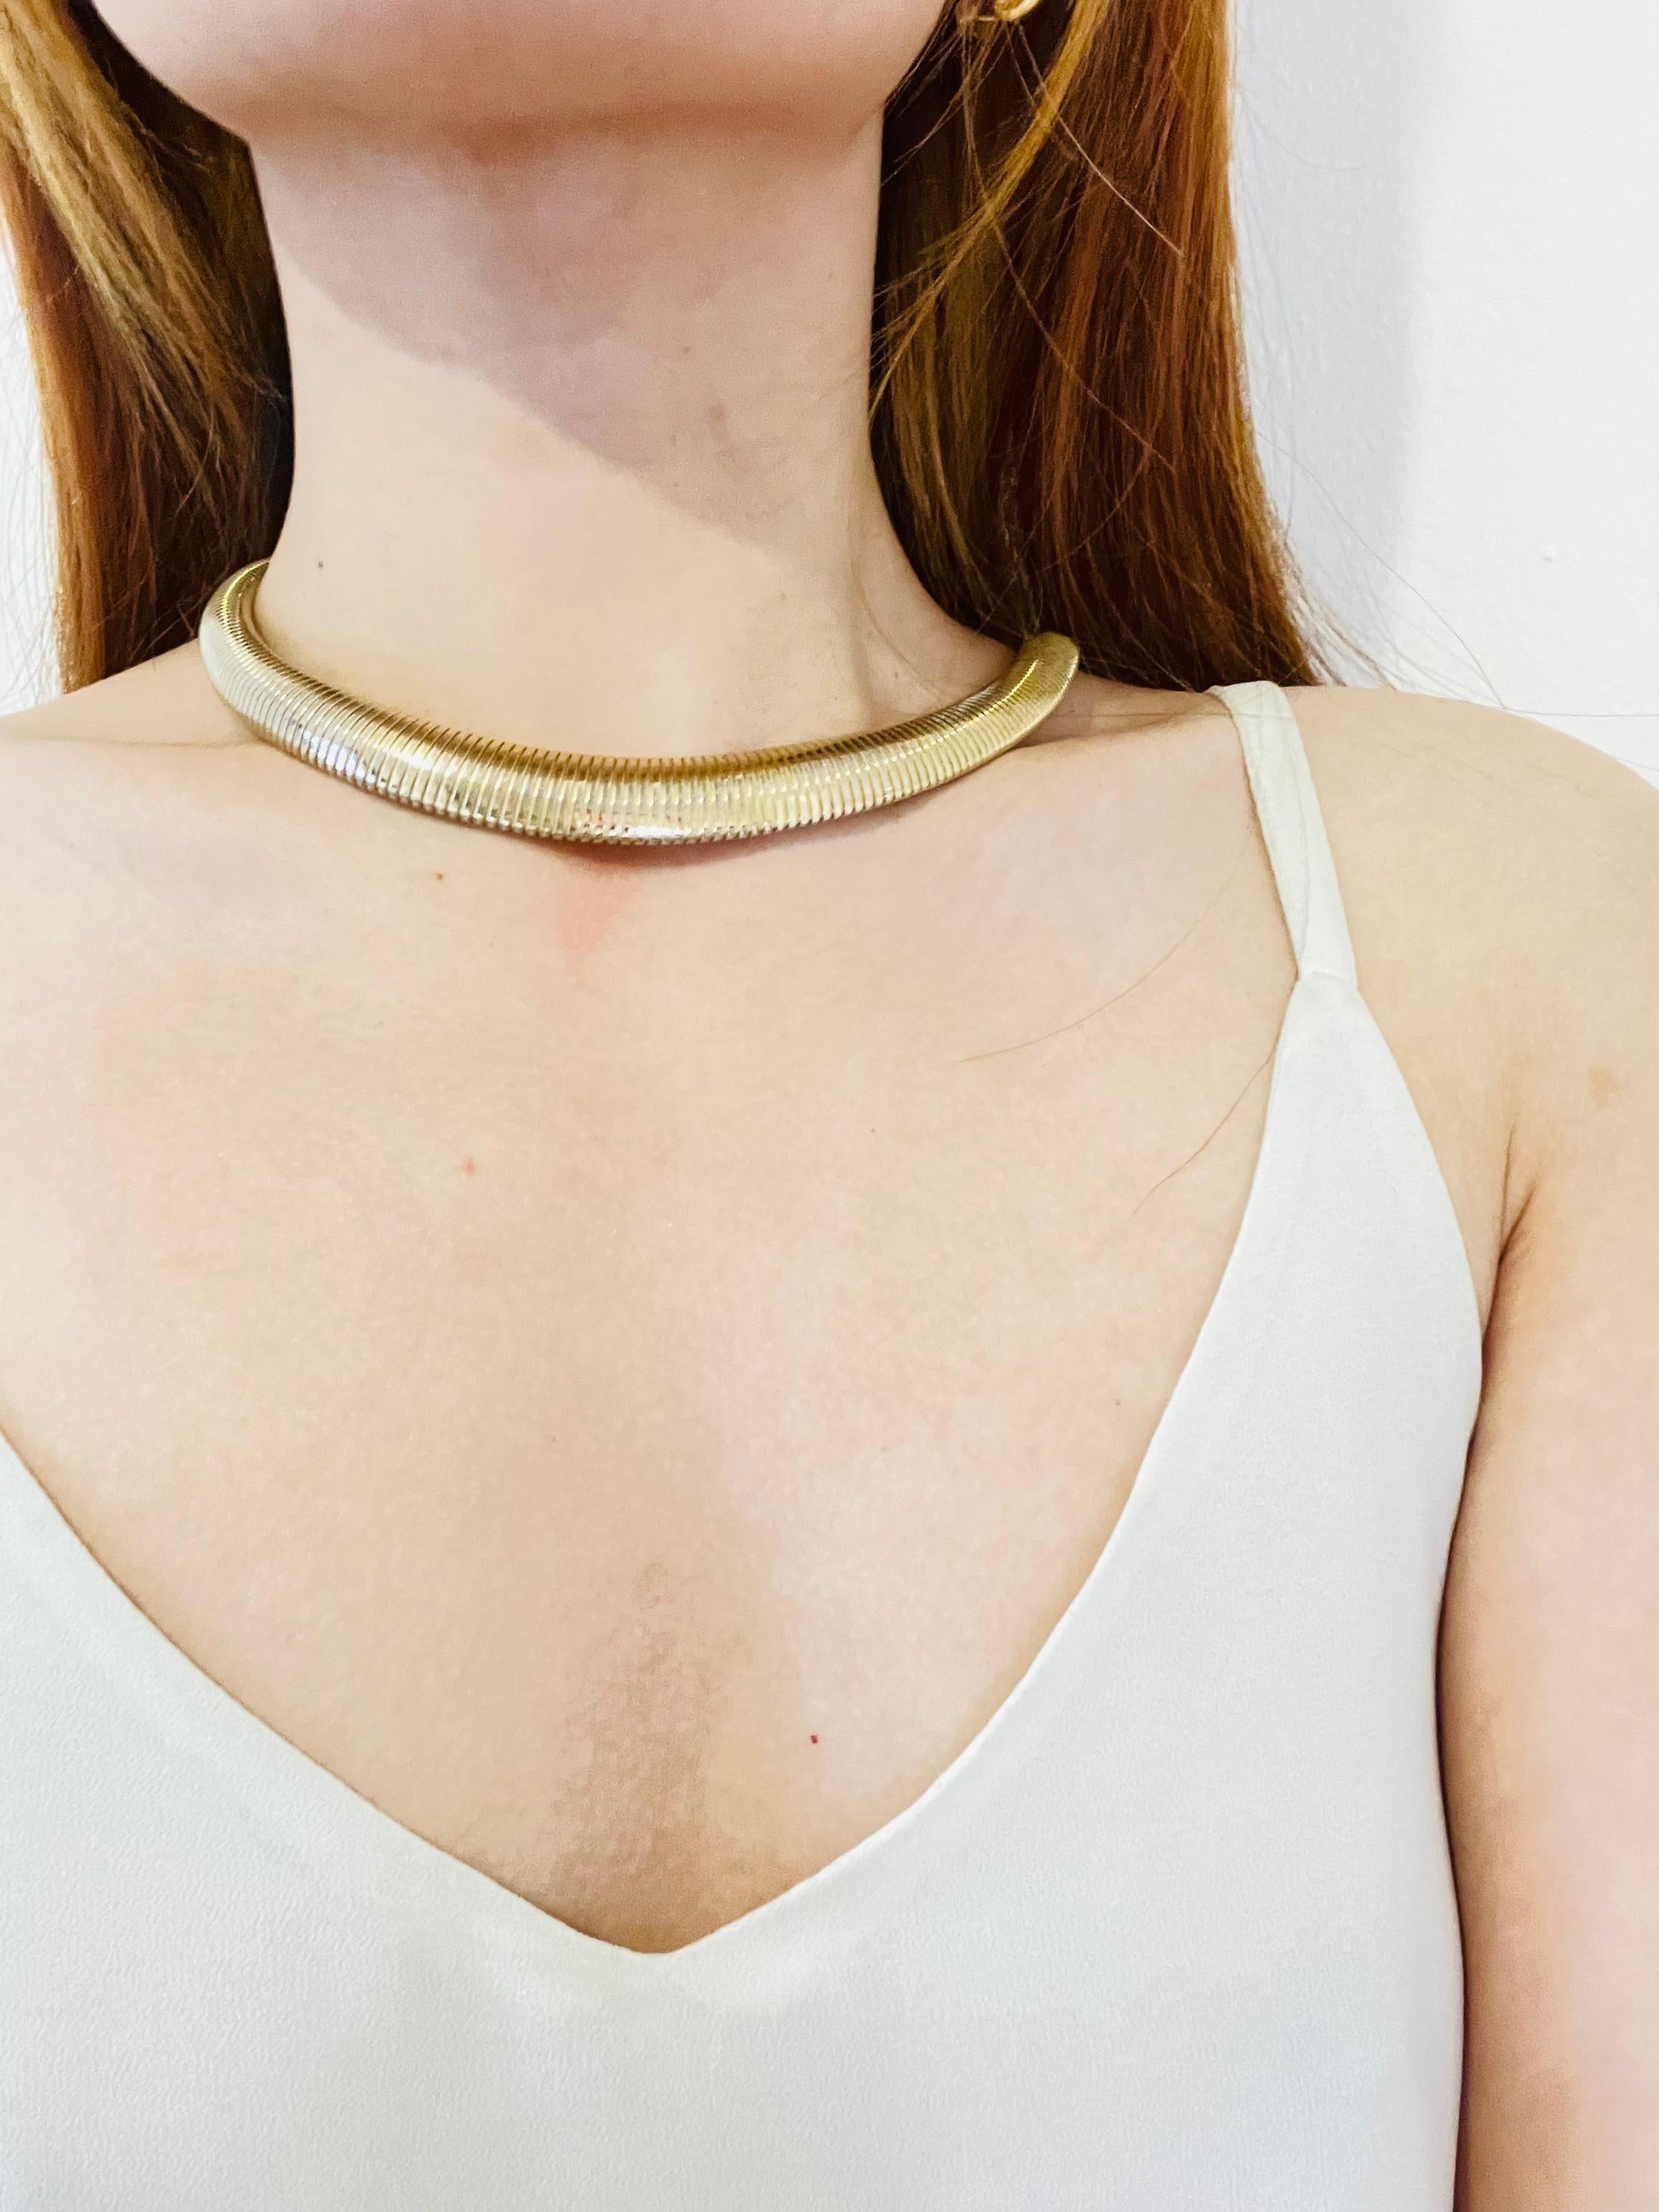 Women's or Men's Christian Dior Vintage 1980s Ribbed Adjustable Omega Snake Choker Gold Necklace